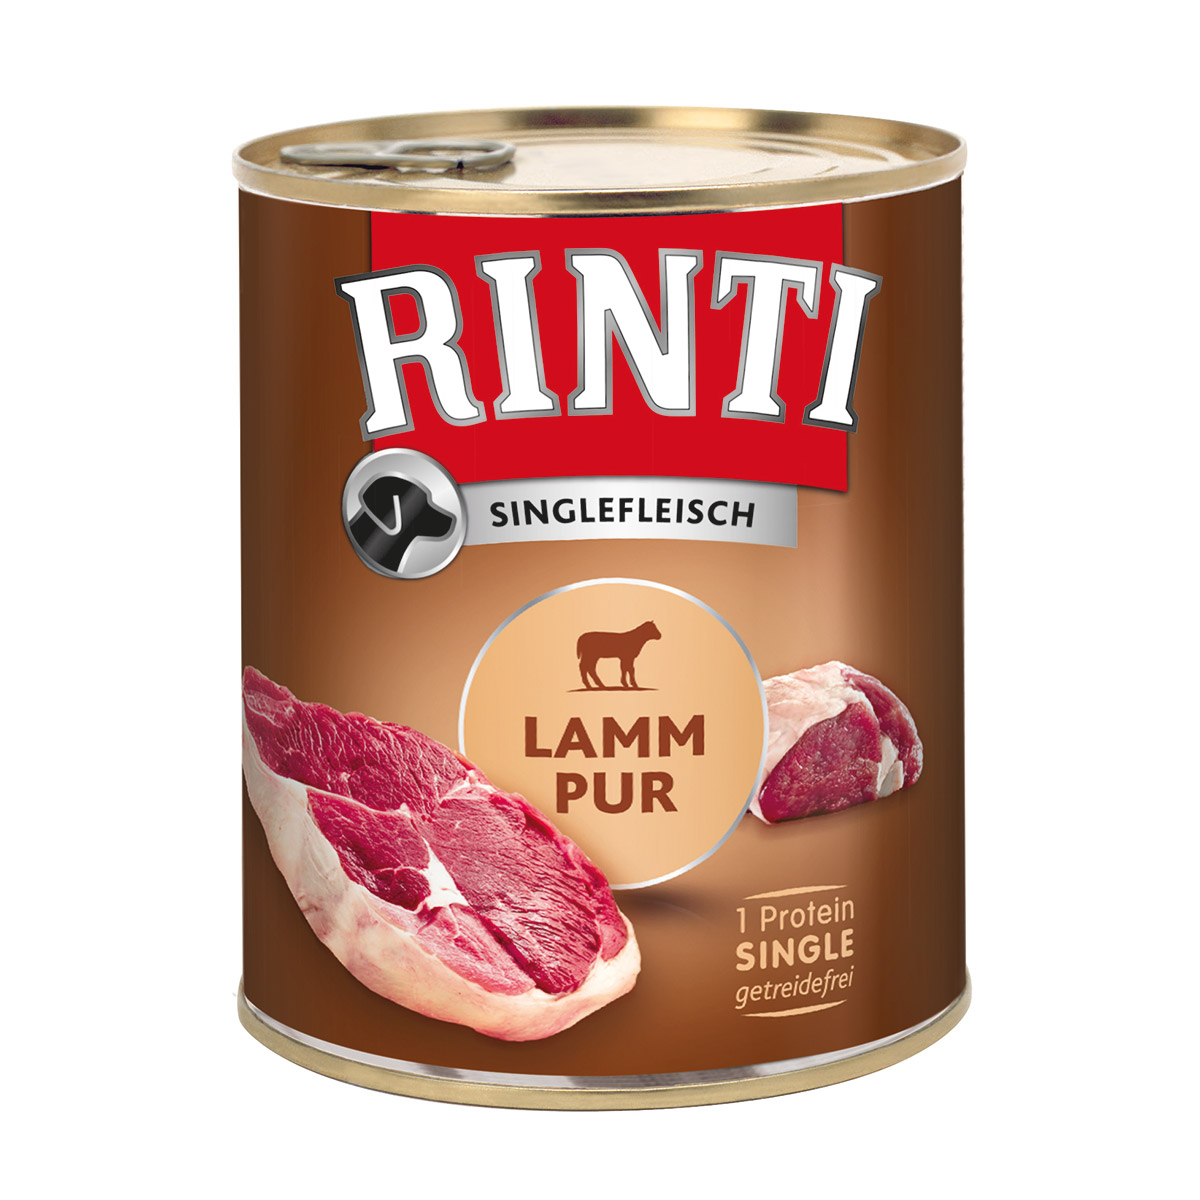 RINTI Singlefleisch čisté jehněčí maso 6 × 800 g